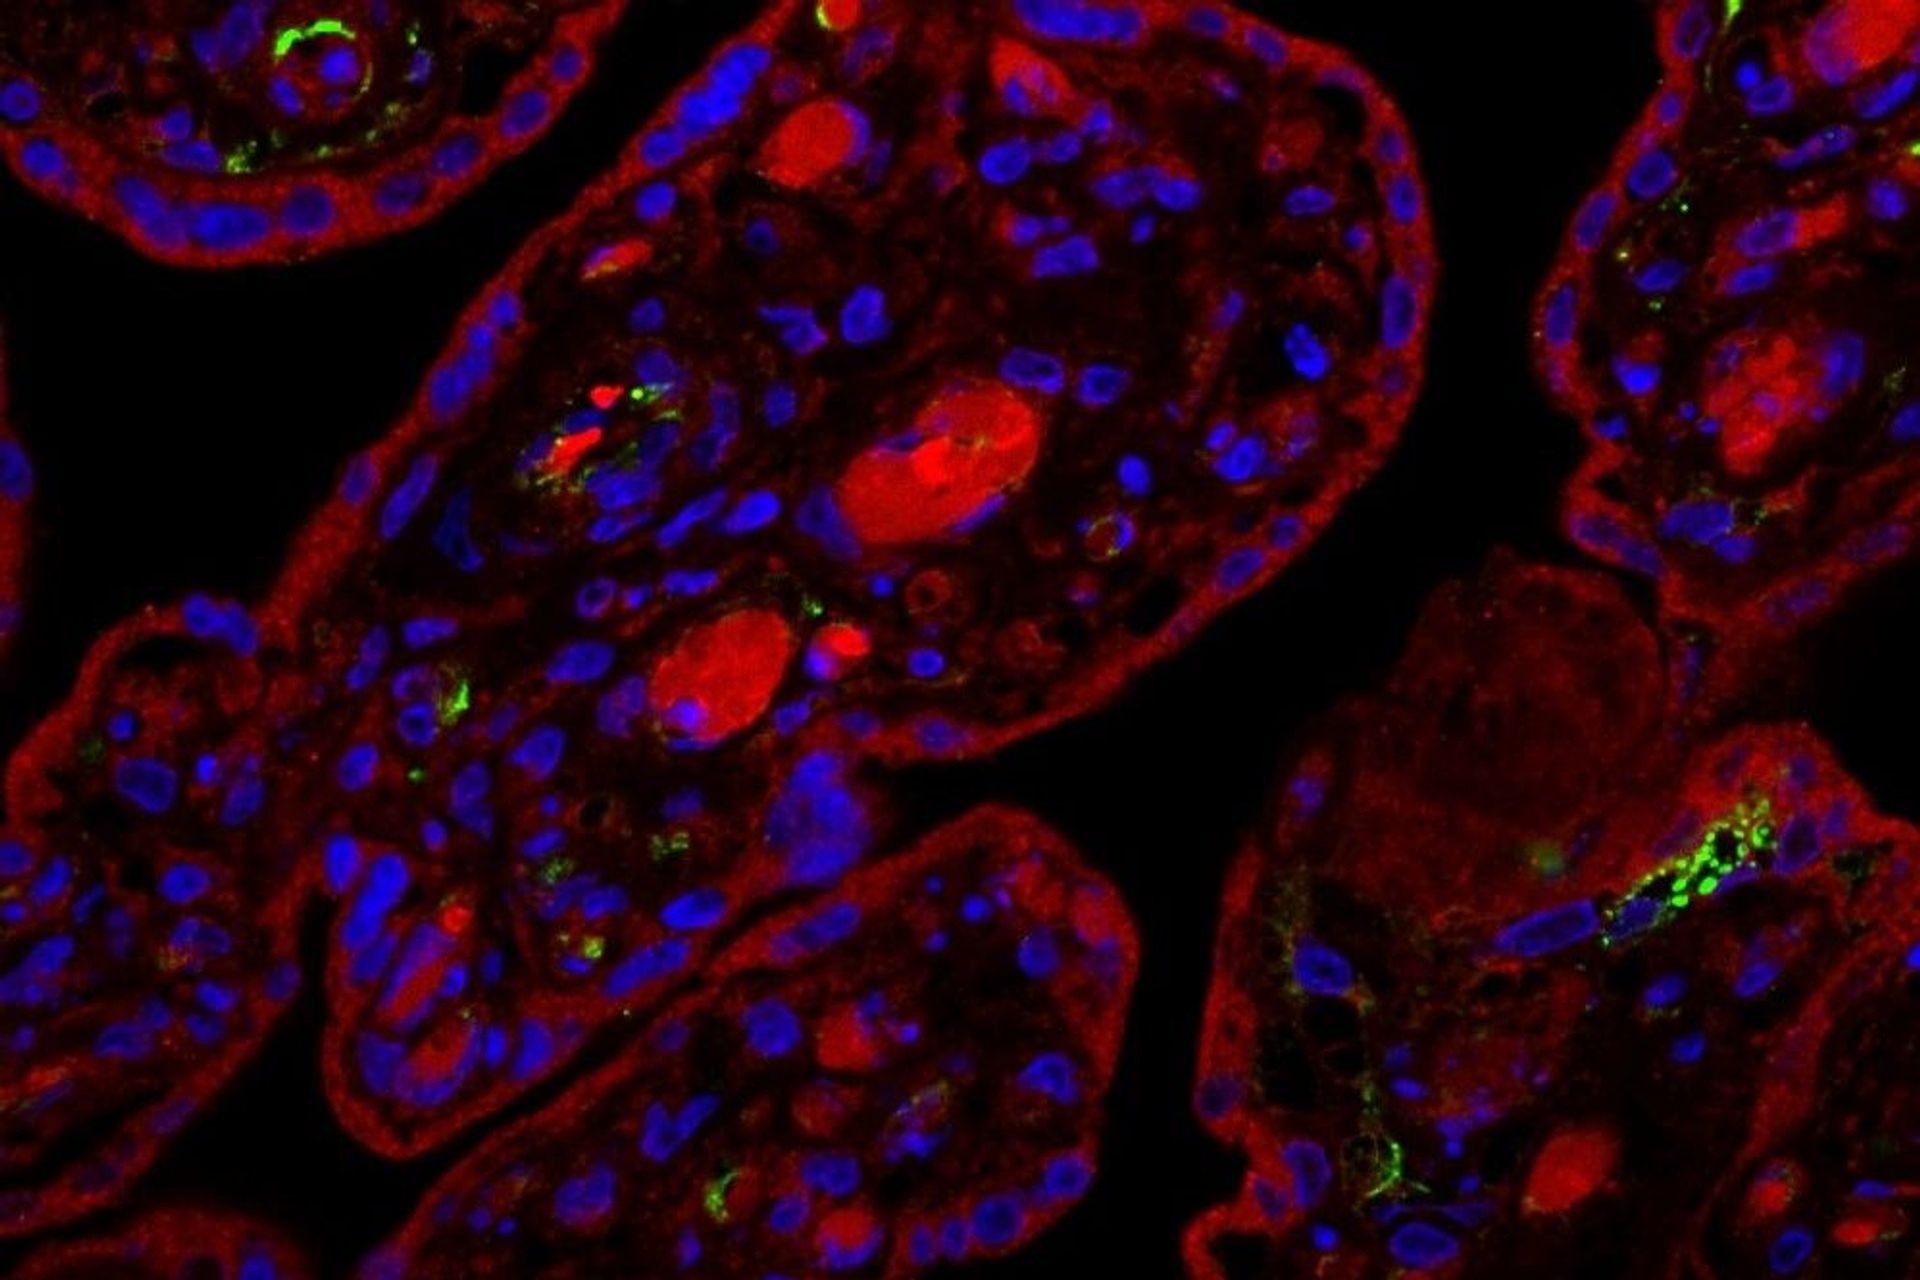 Sezione di placenta umana infettata con SARS-CoV-2 e analizzata 24 ore dopo l'infezione: il segnale verde indica la presenza della proteina virale Spike e il segnale blu i nuclei delle cellule nel tessuto placentare